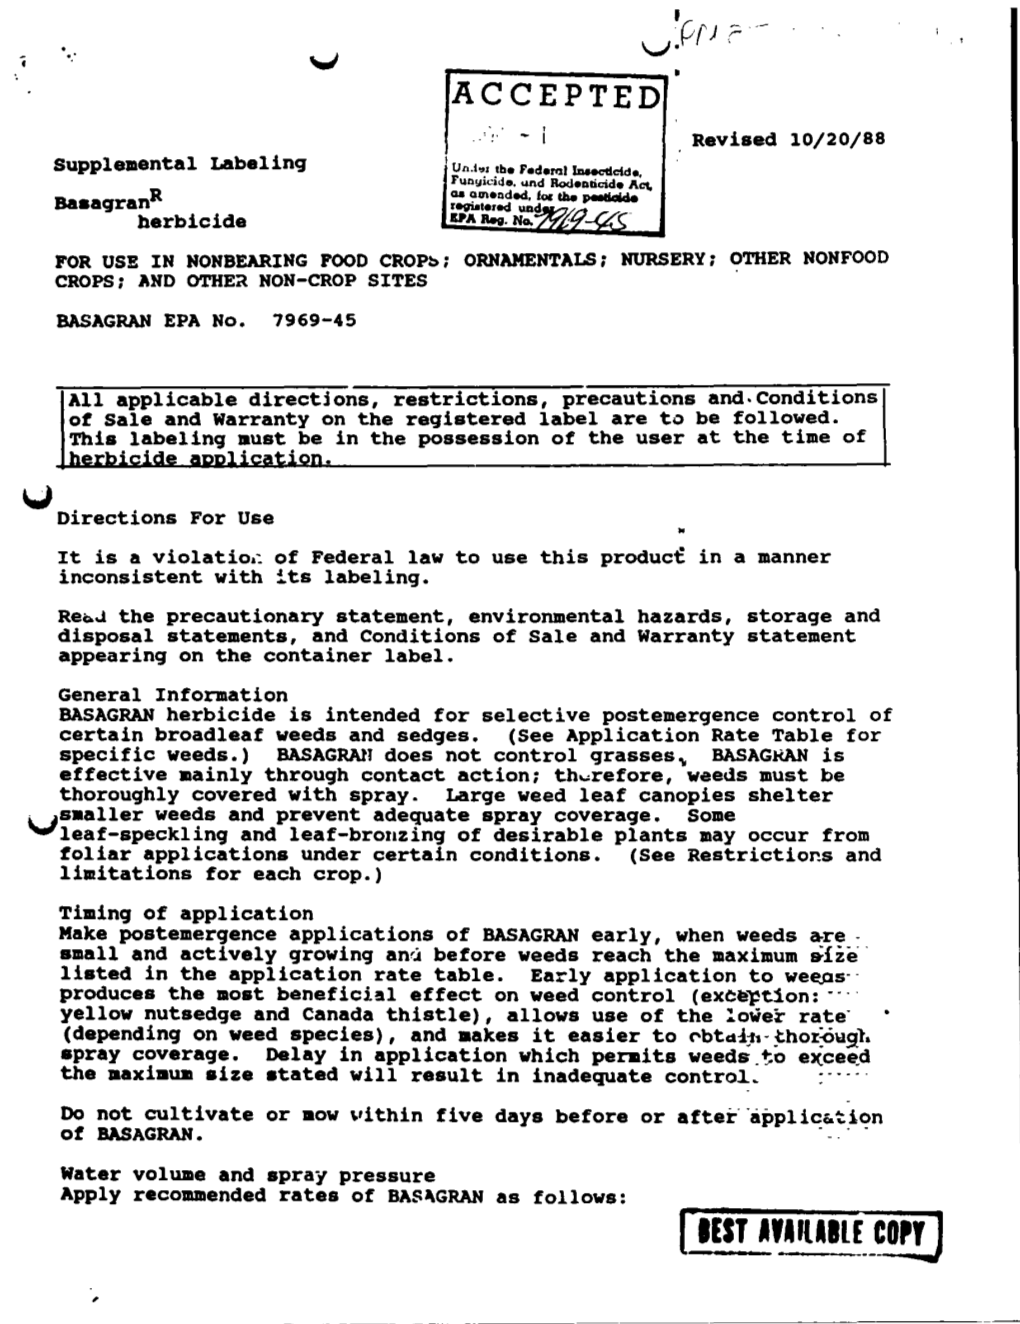 U.S. EPA, Pesticide Product Label, BASAGRAN HERBICIDE, 11/01/1988